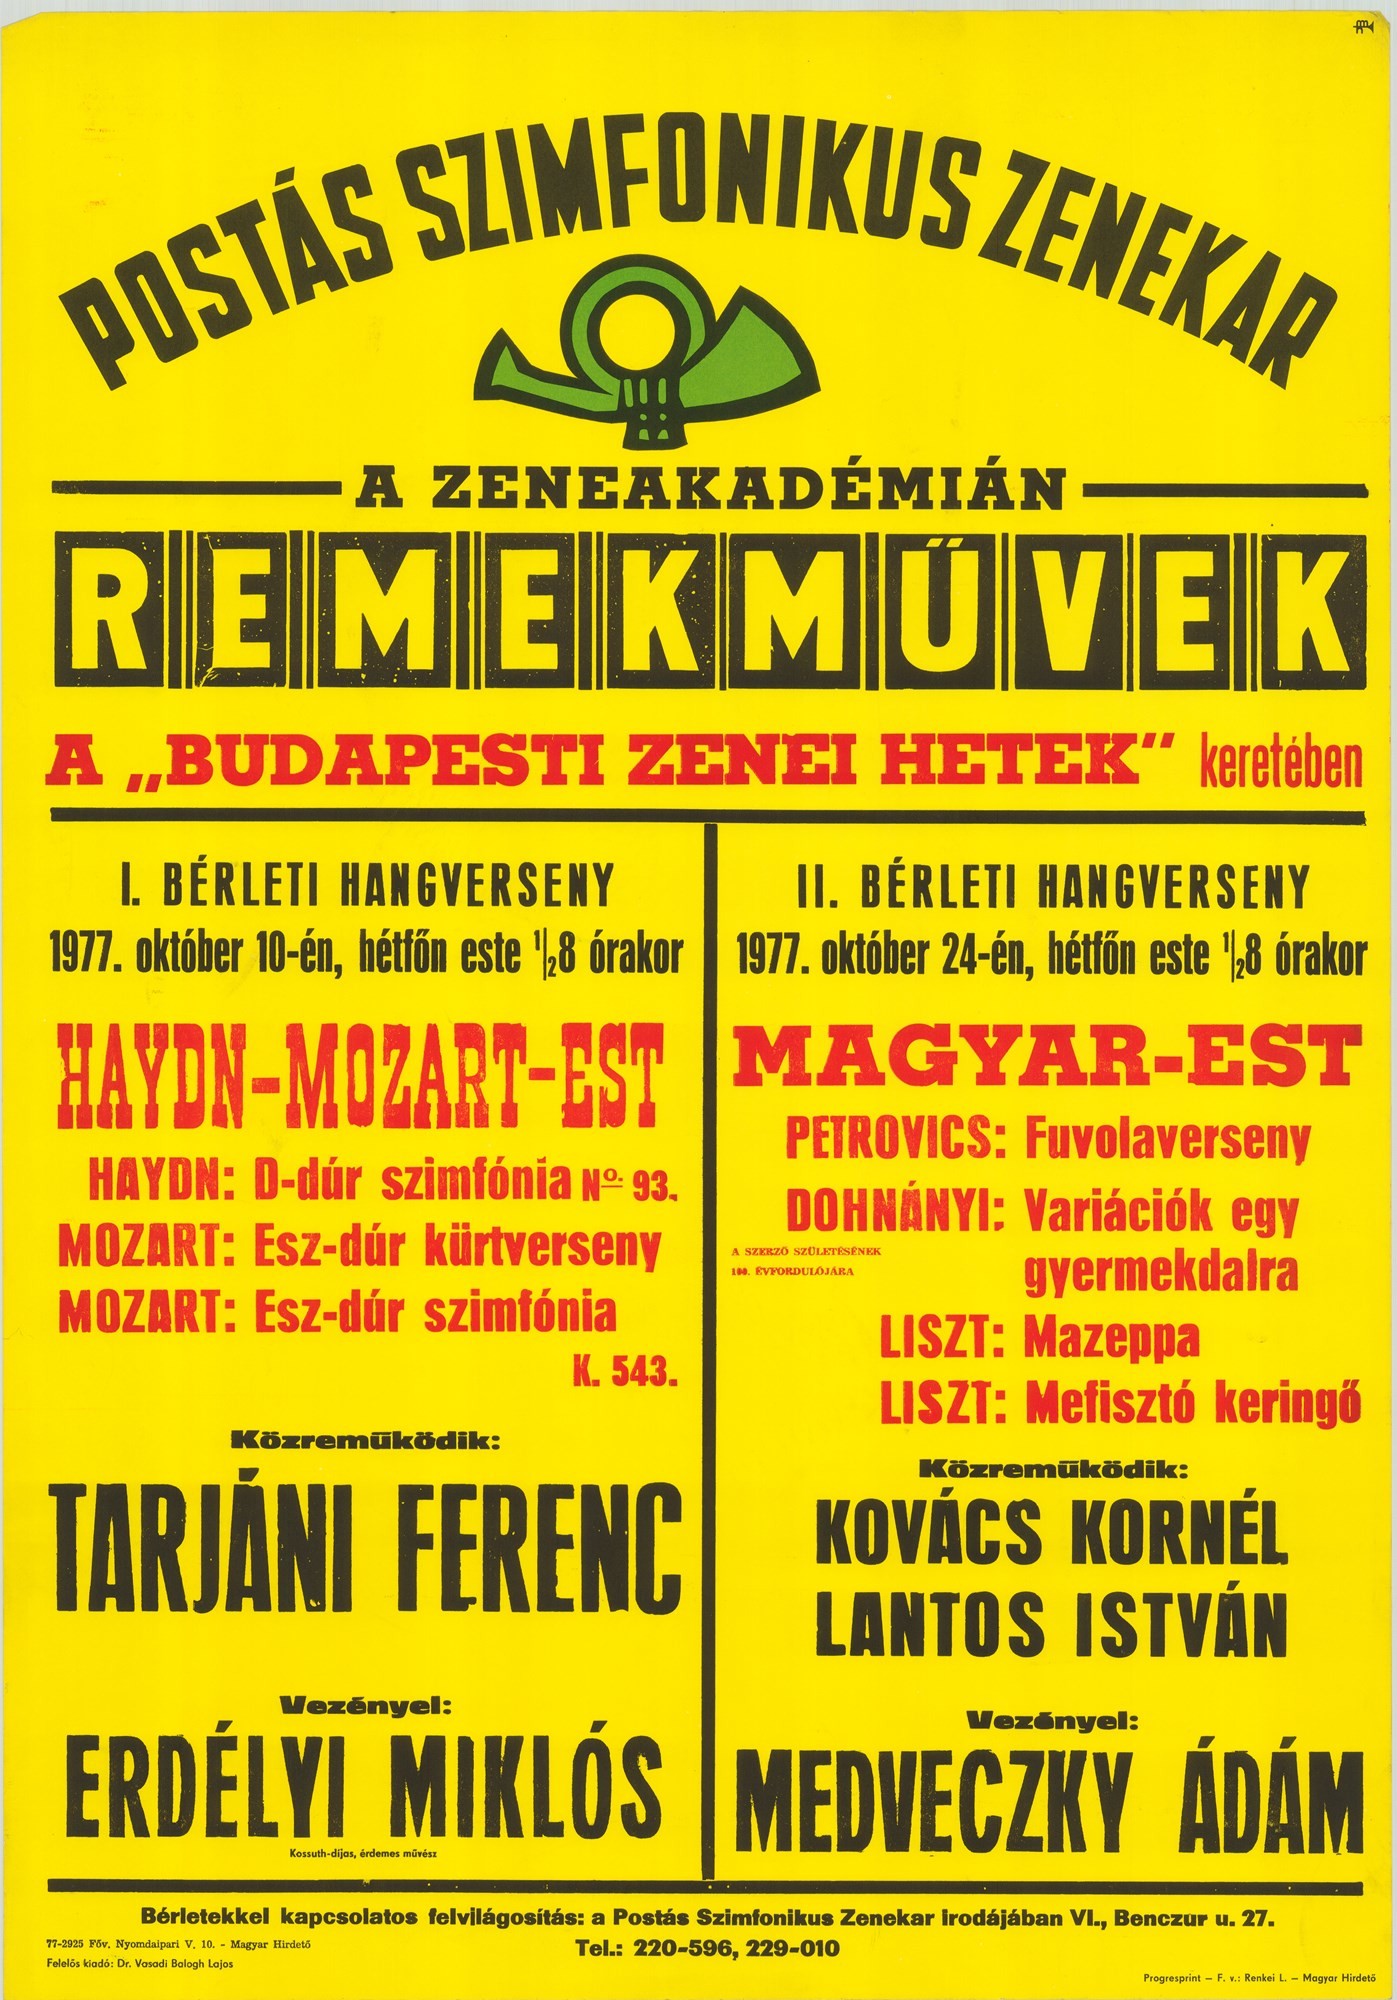 Plakát - Postás Szimfonikus Zenekar a Zeneakadémián, Remekművek, 1977 (Postamúzeum CC BY-NC-SA)